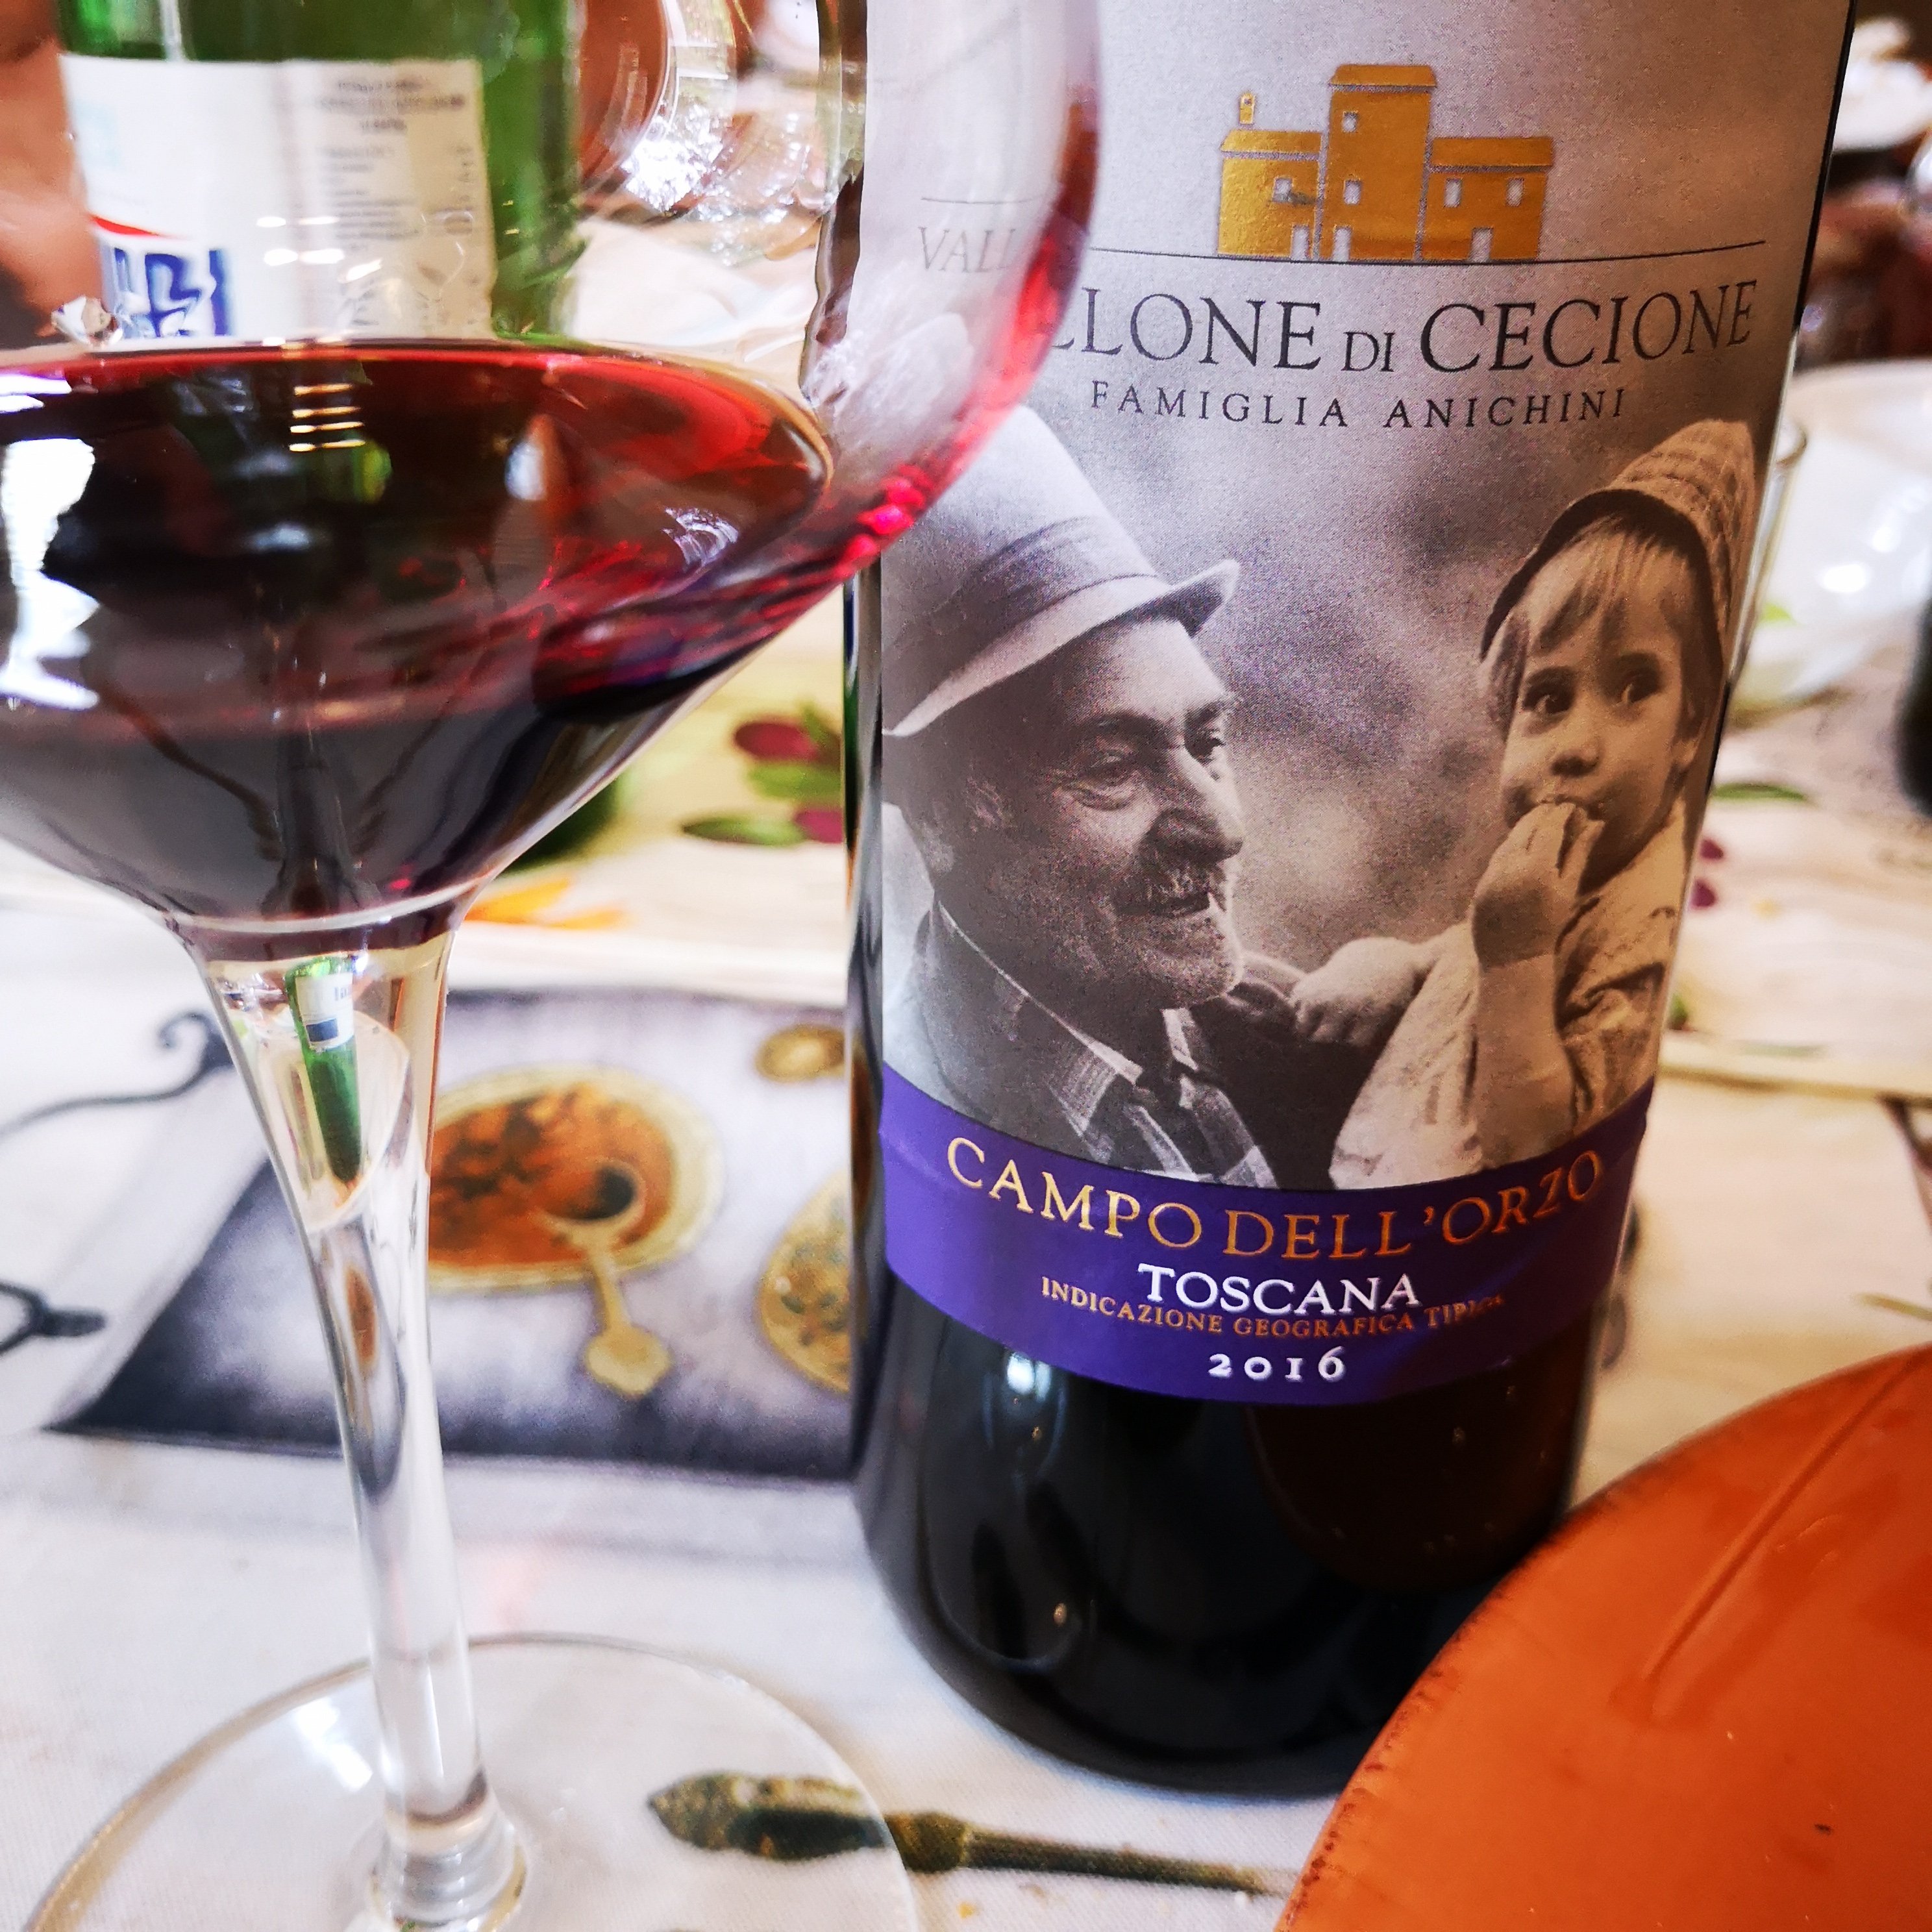 Enonauta/Degustazione di Vino #085 - review - Campo dell'Orzo 2016 - Vallone di Cecione | da Panzano un Sangiovese schietto ed energico